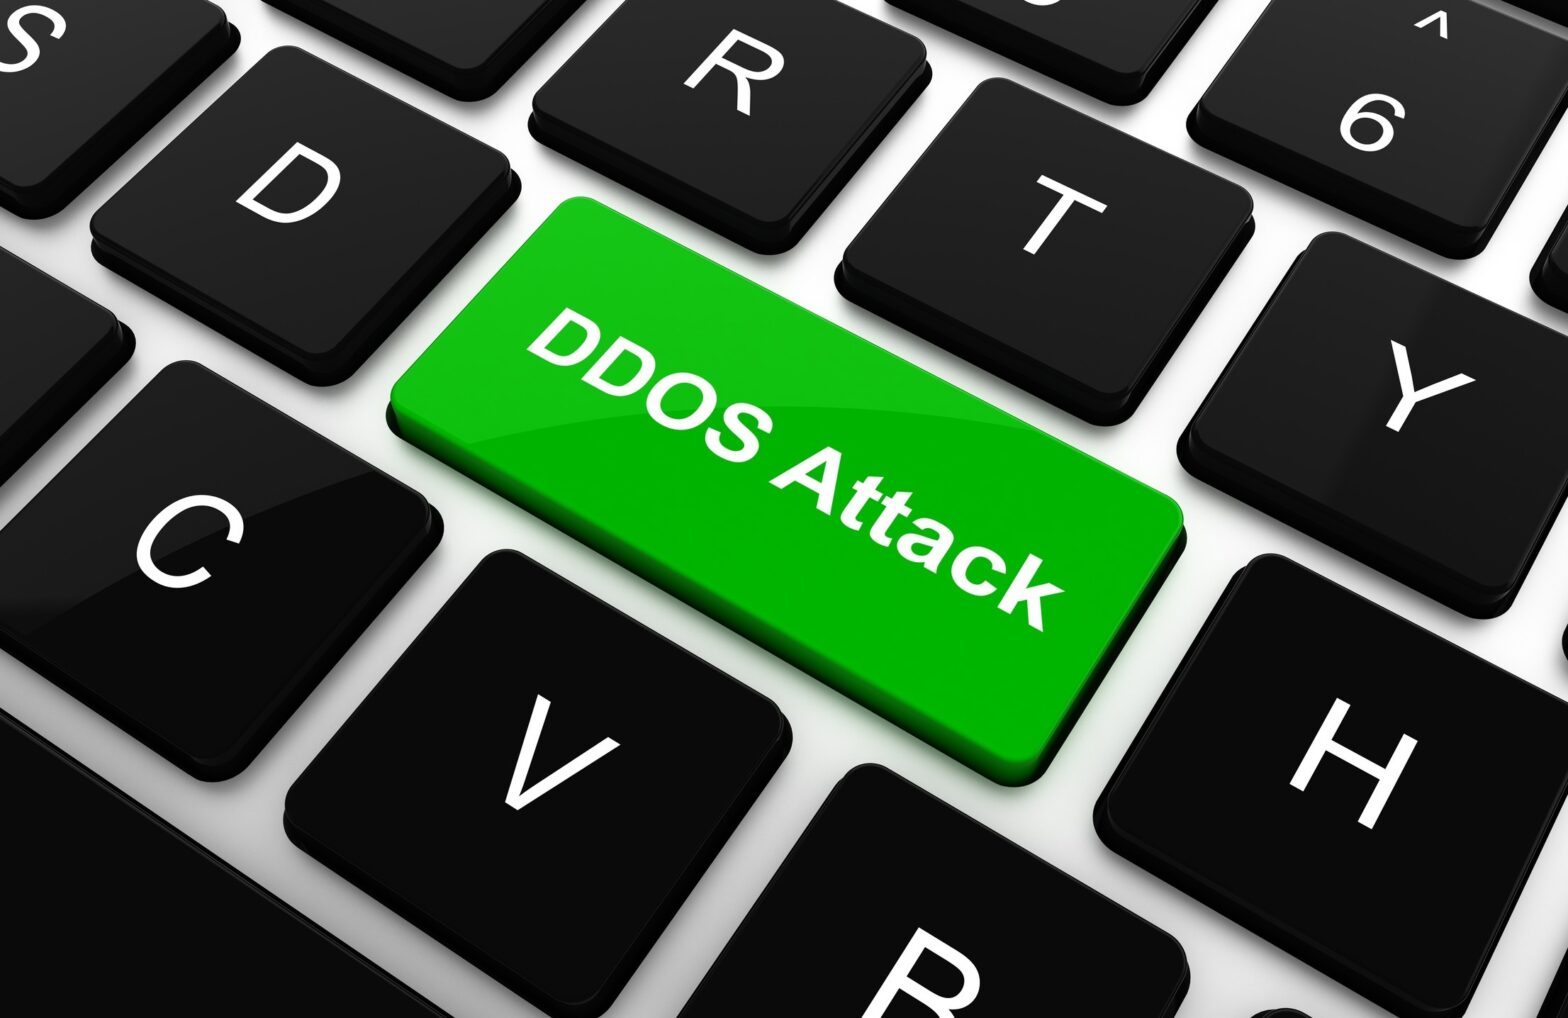 DDoS attacks and LockBit